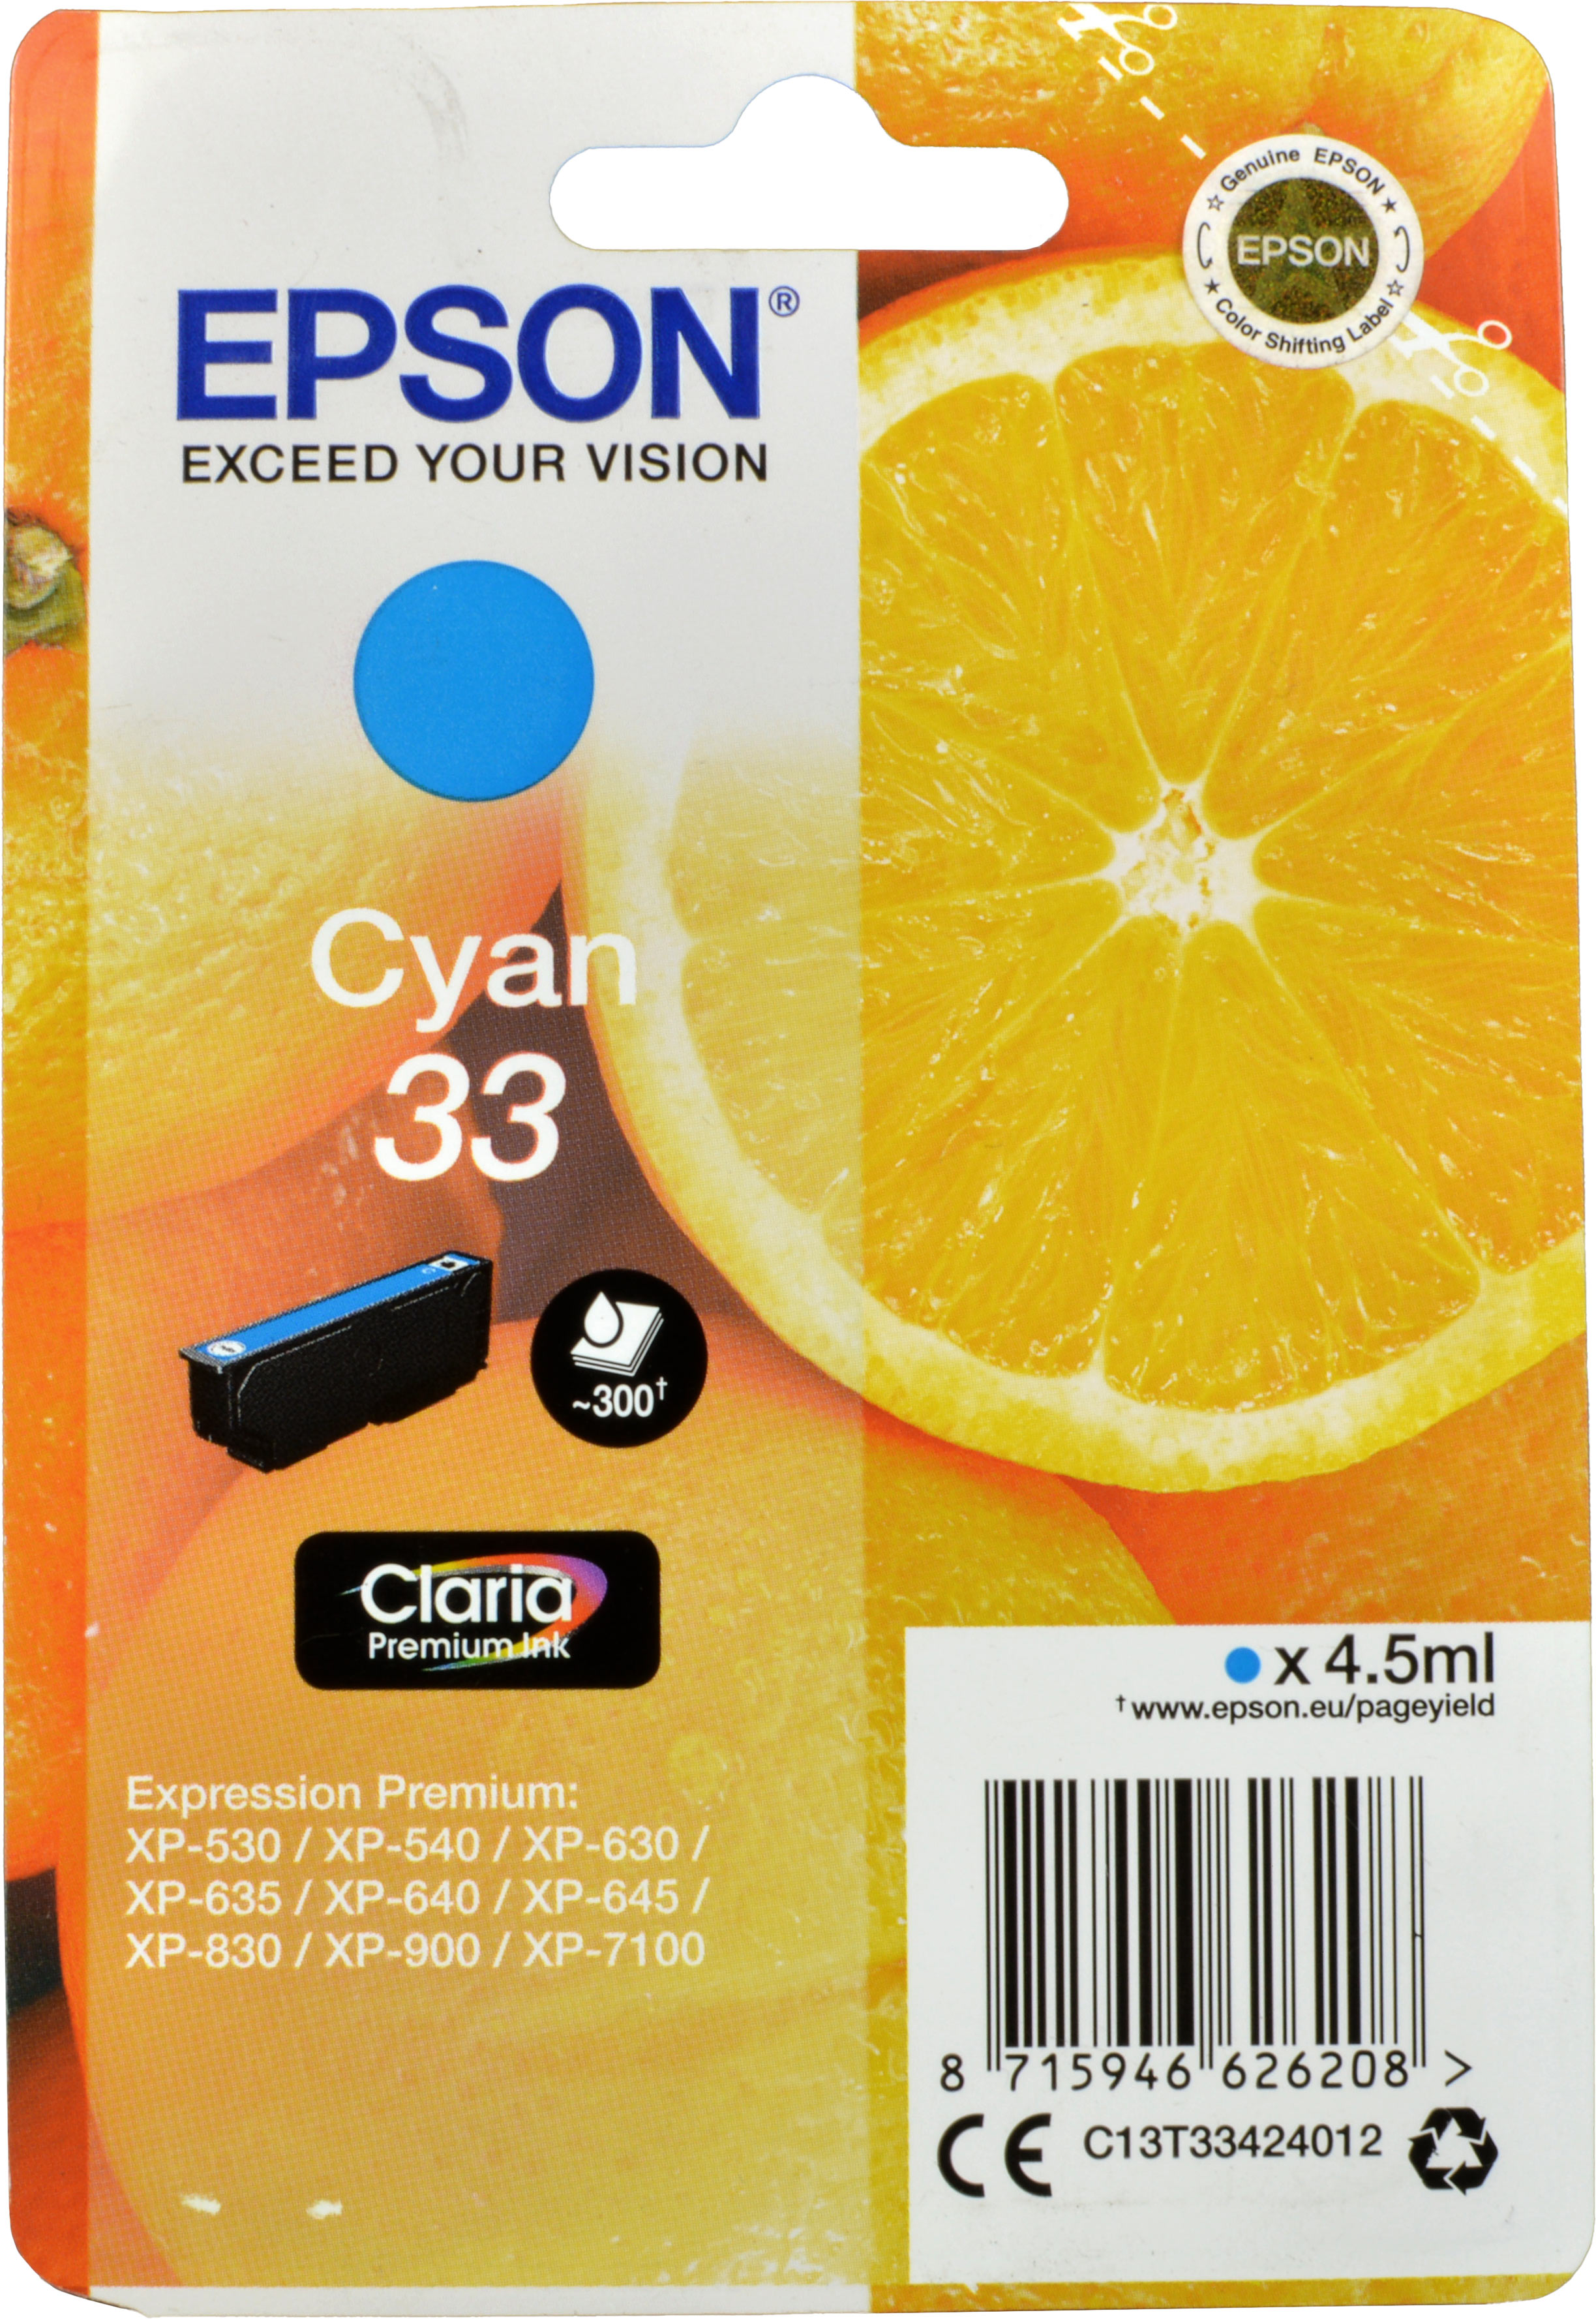 Epson Tinte C13T33424012 Cyan 33  cyan